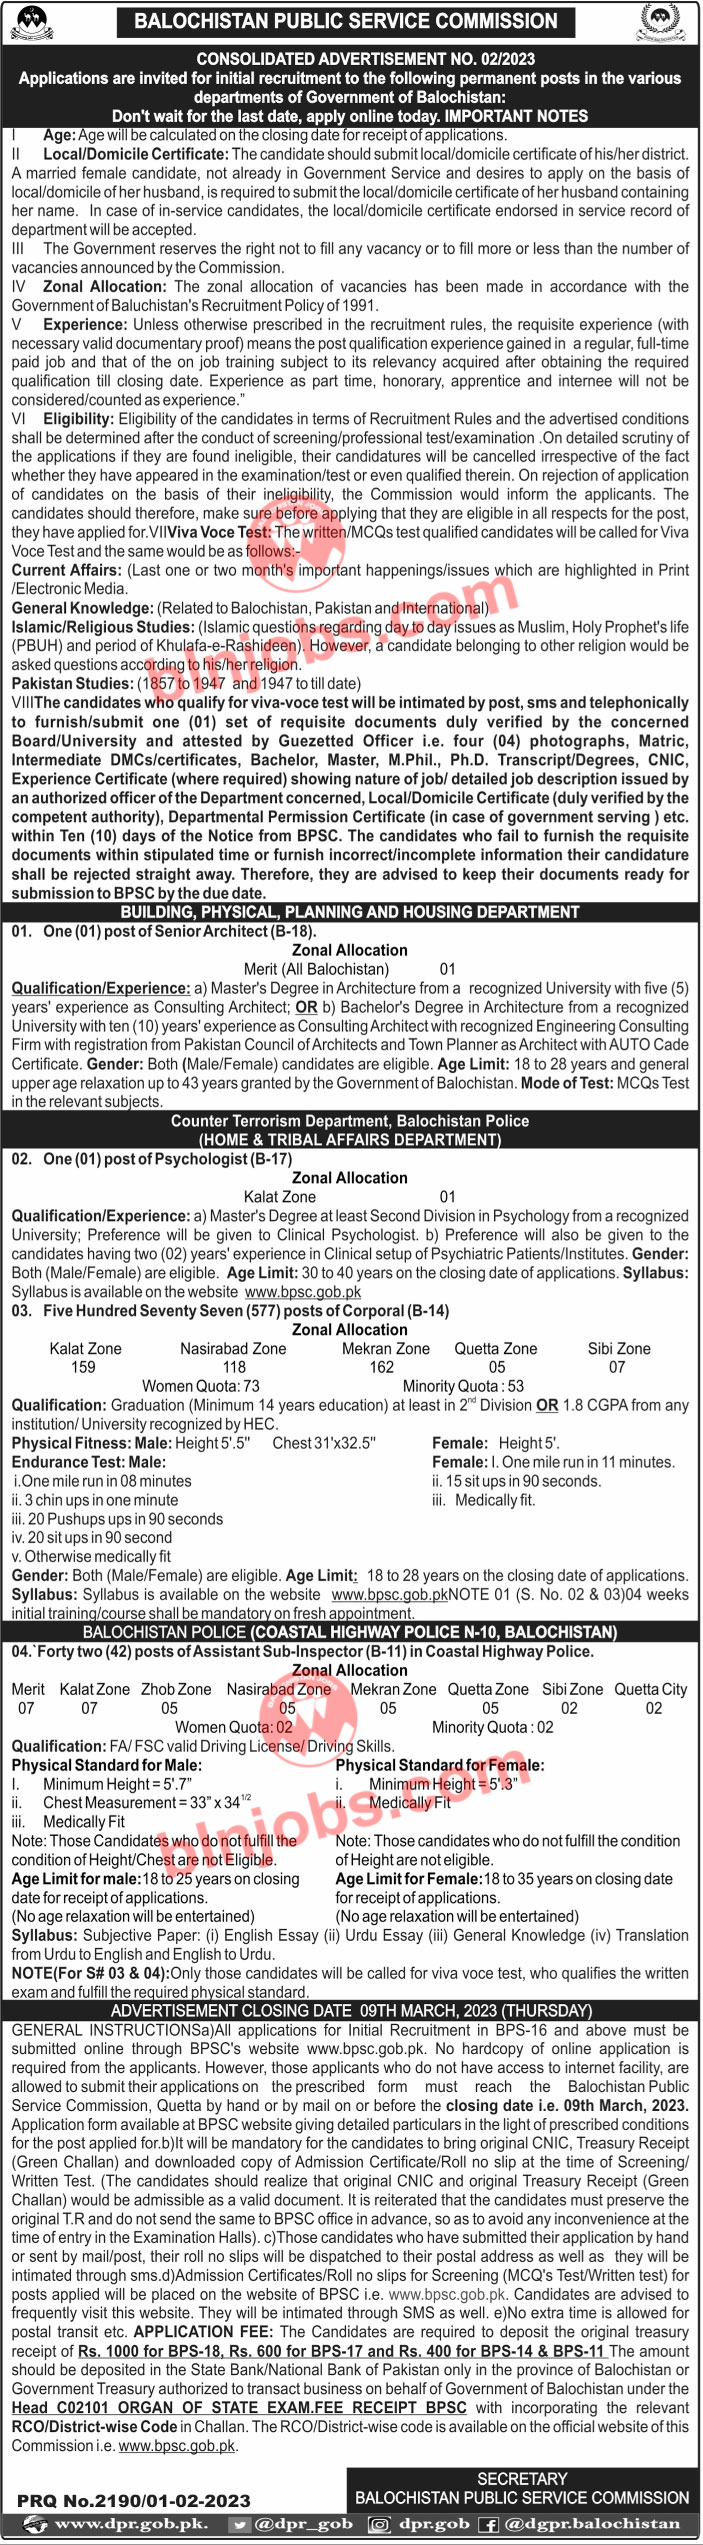 BPSC Jobs 2023 Advertisement No 2-2023 CTD Balochistan Jobs